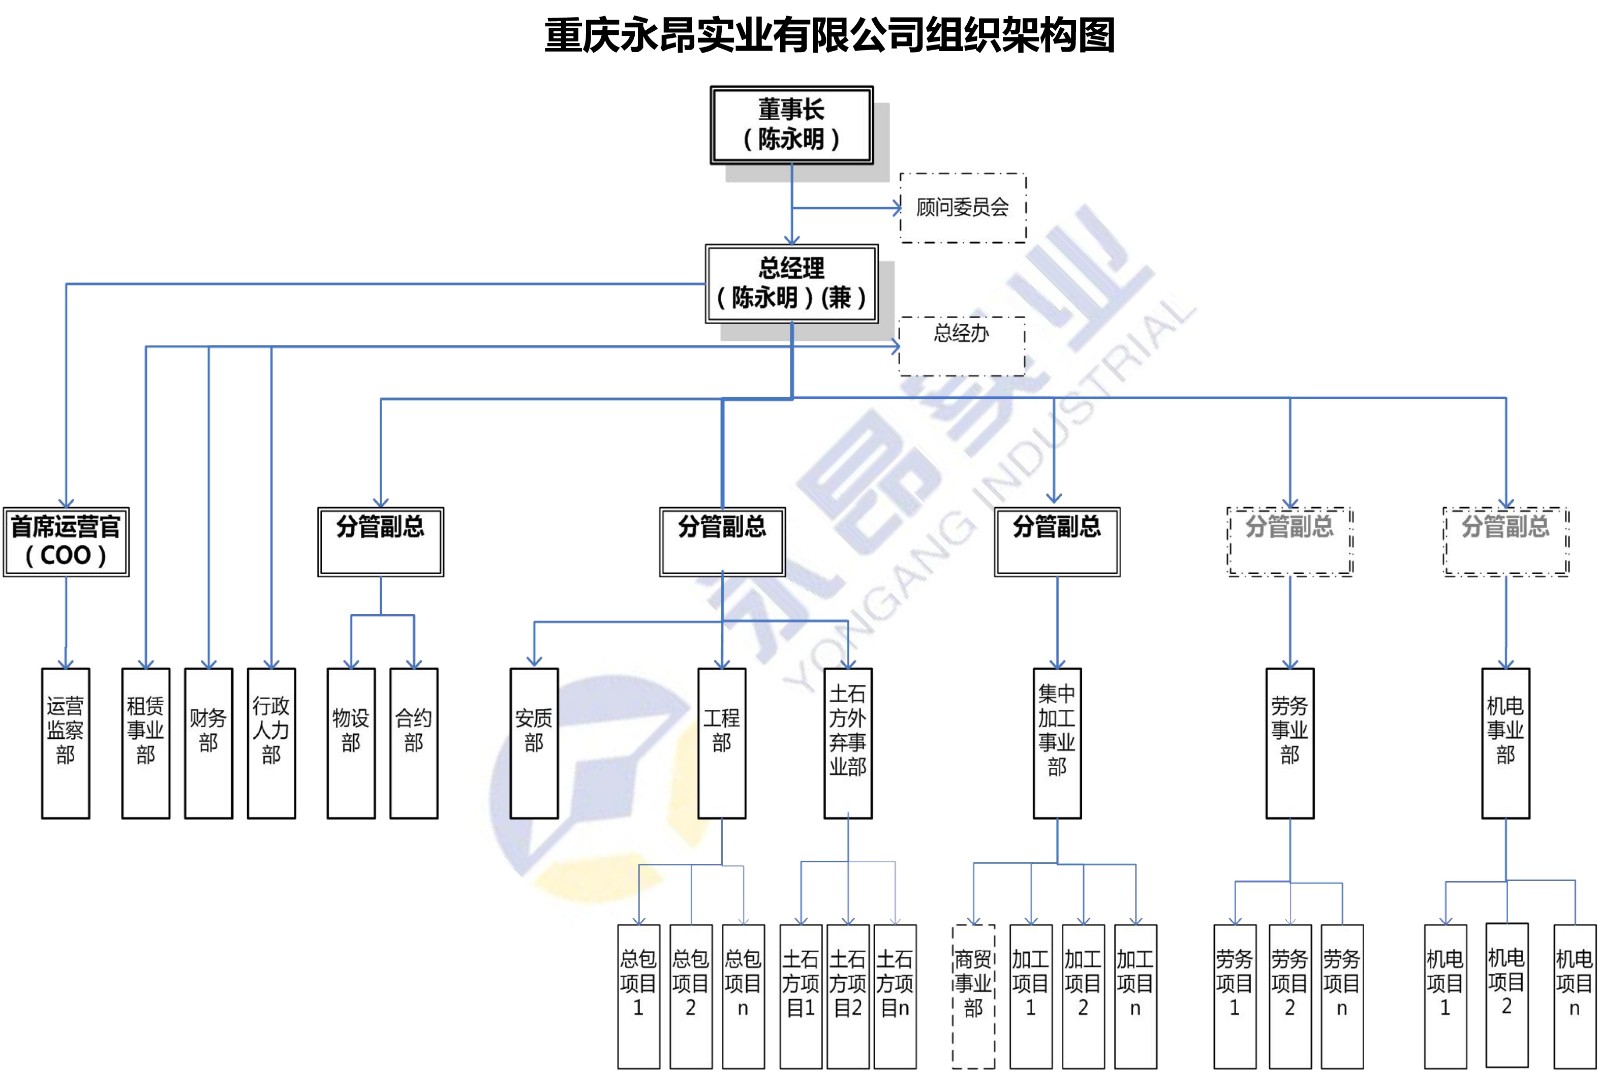 重庆永昂实业有限公司组织架构图（公司&总包&劳务）20211009-1.jpg